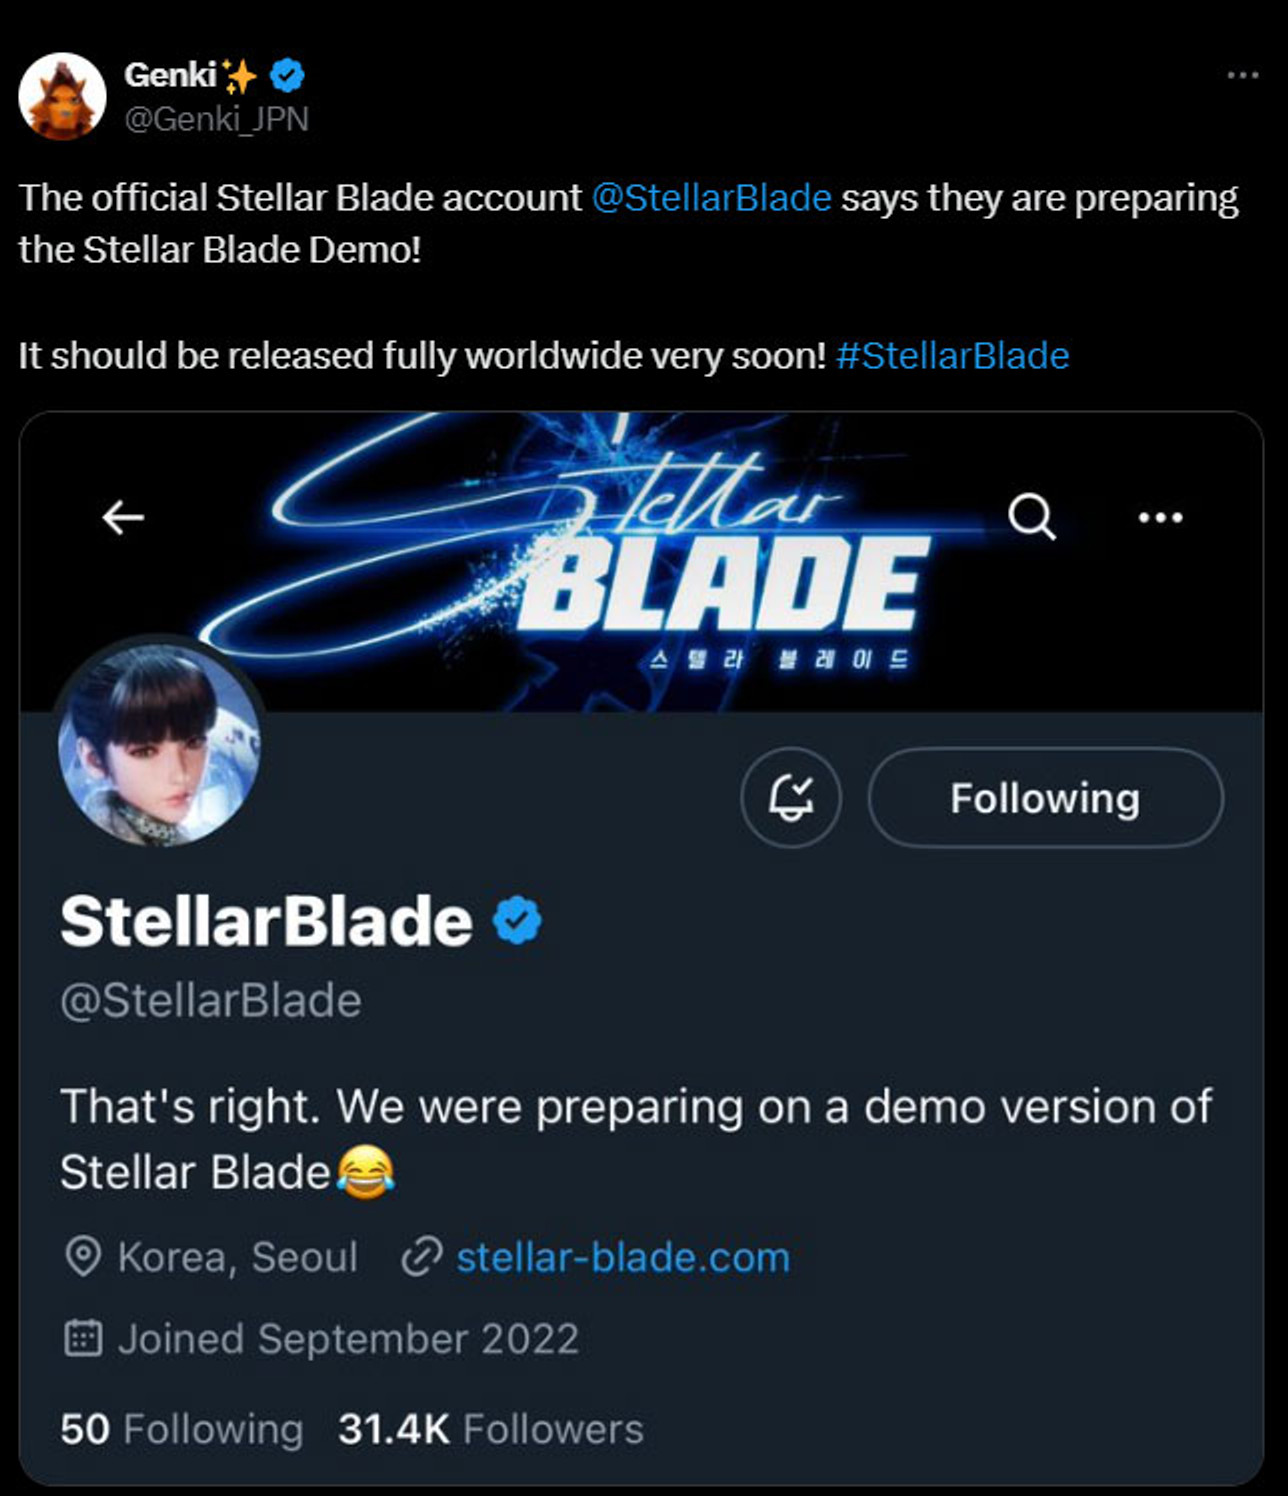 stellar-blade-demo